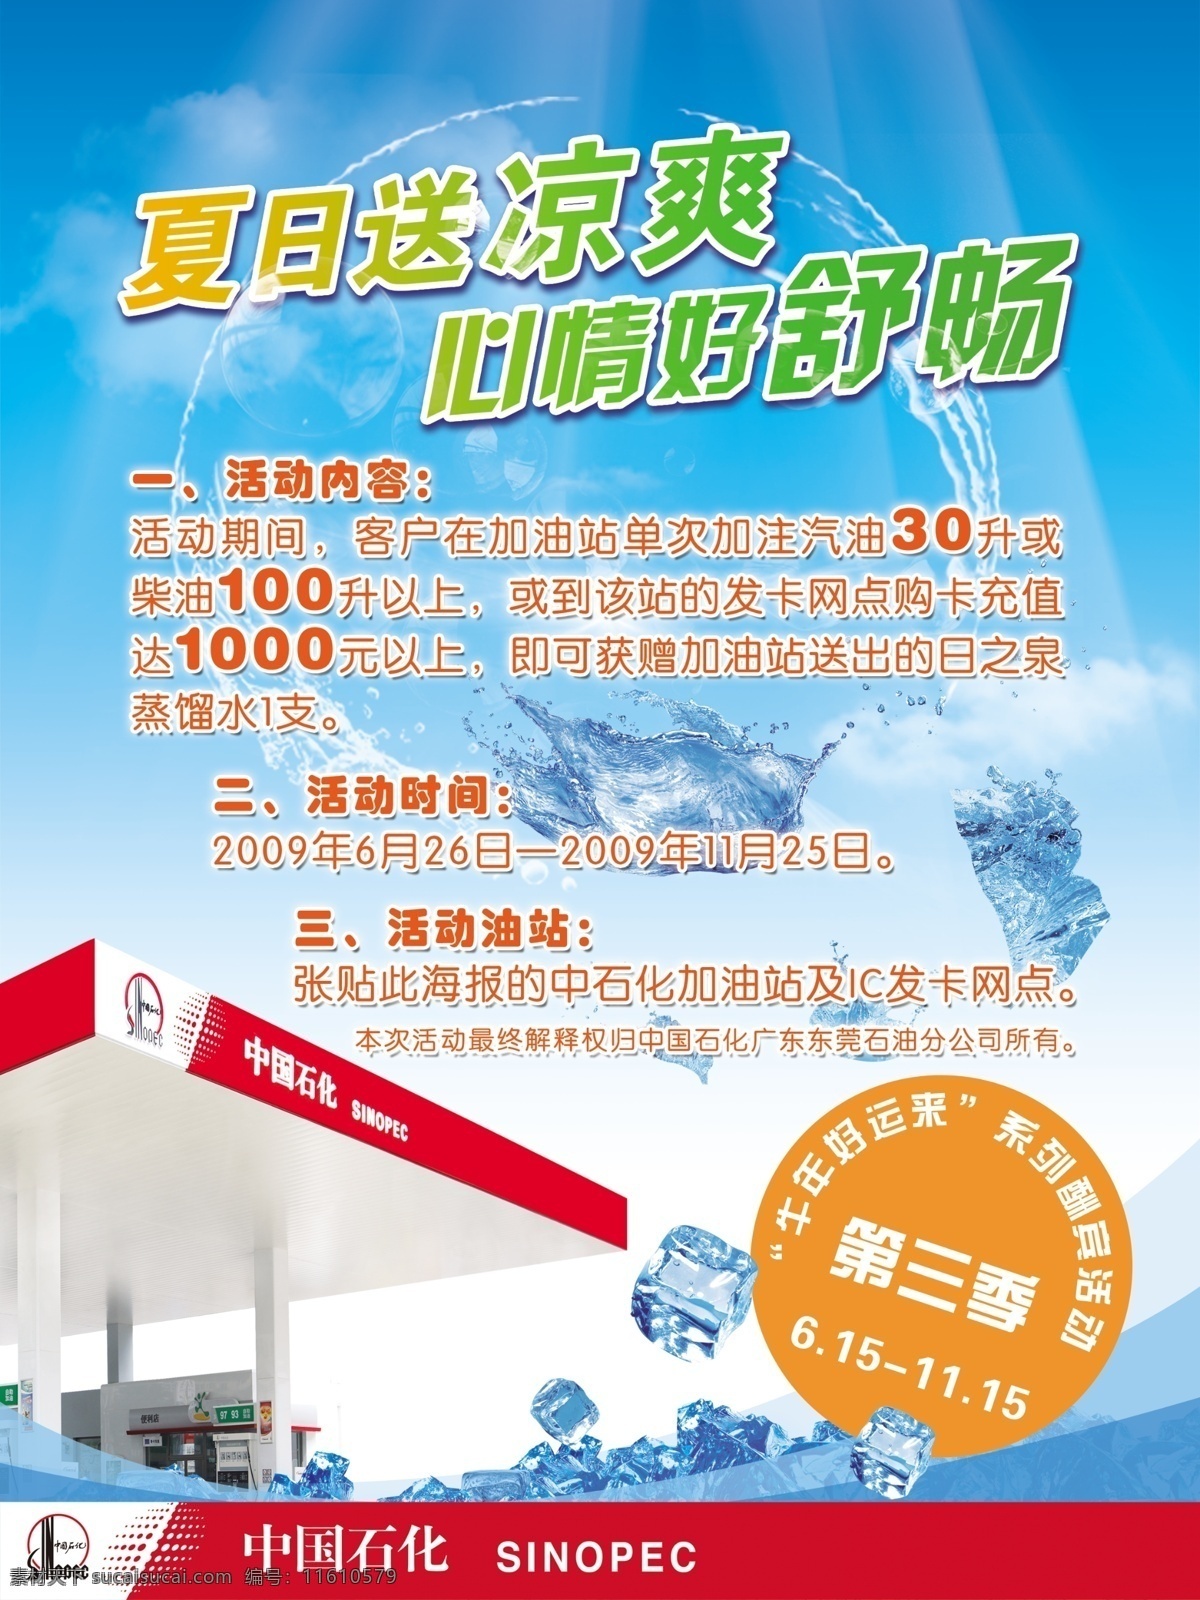 中国石化海报 中国石化 自助加油 宣传 dm 冰爽 蓝色 云 广告设计模板 源文件